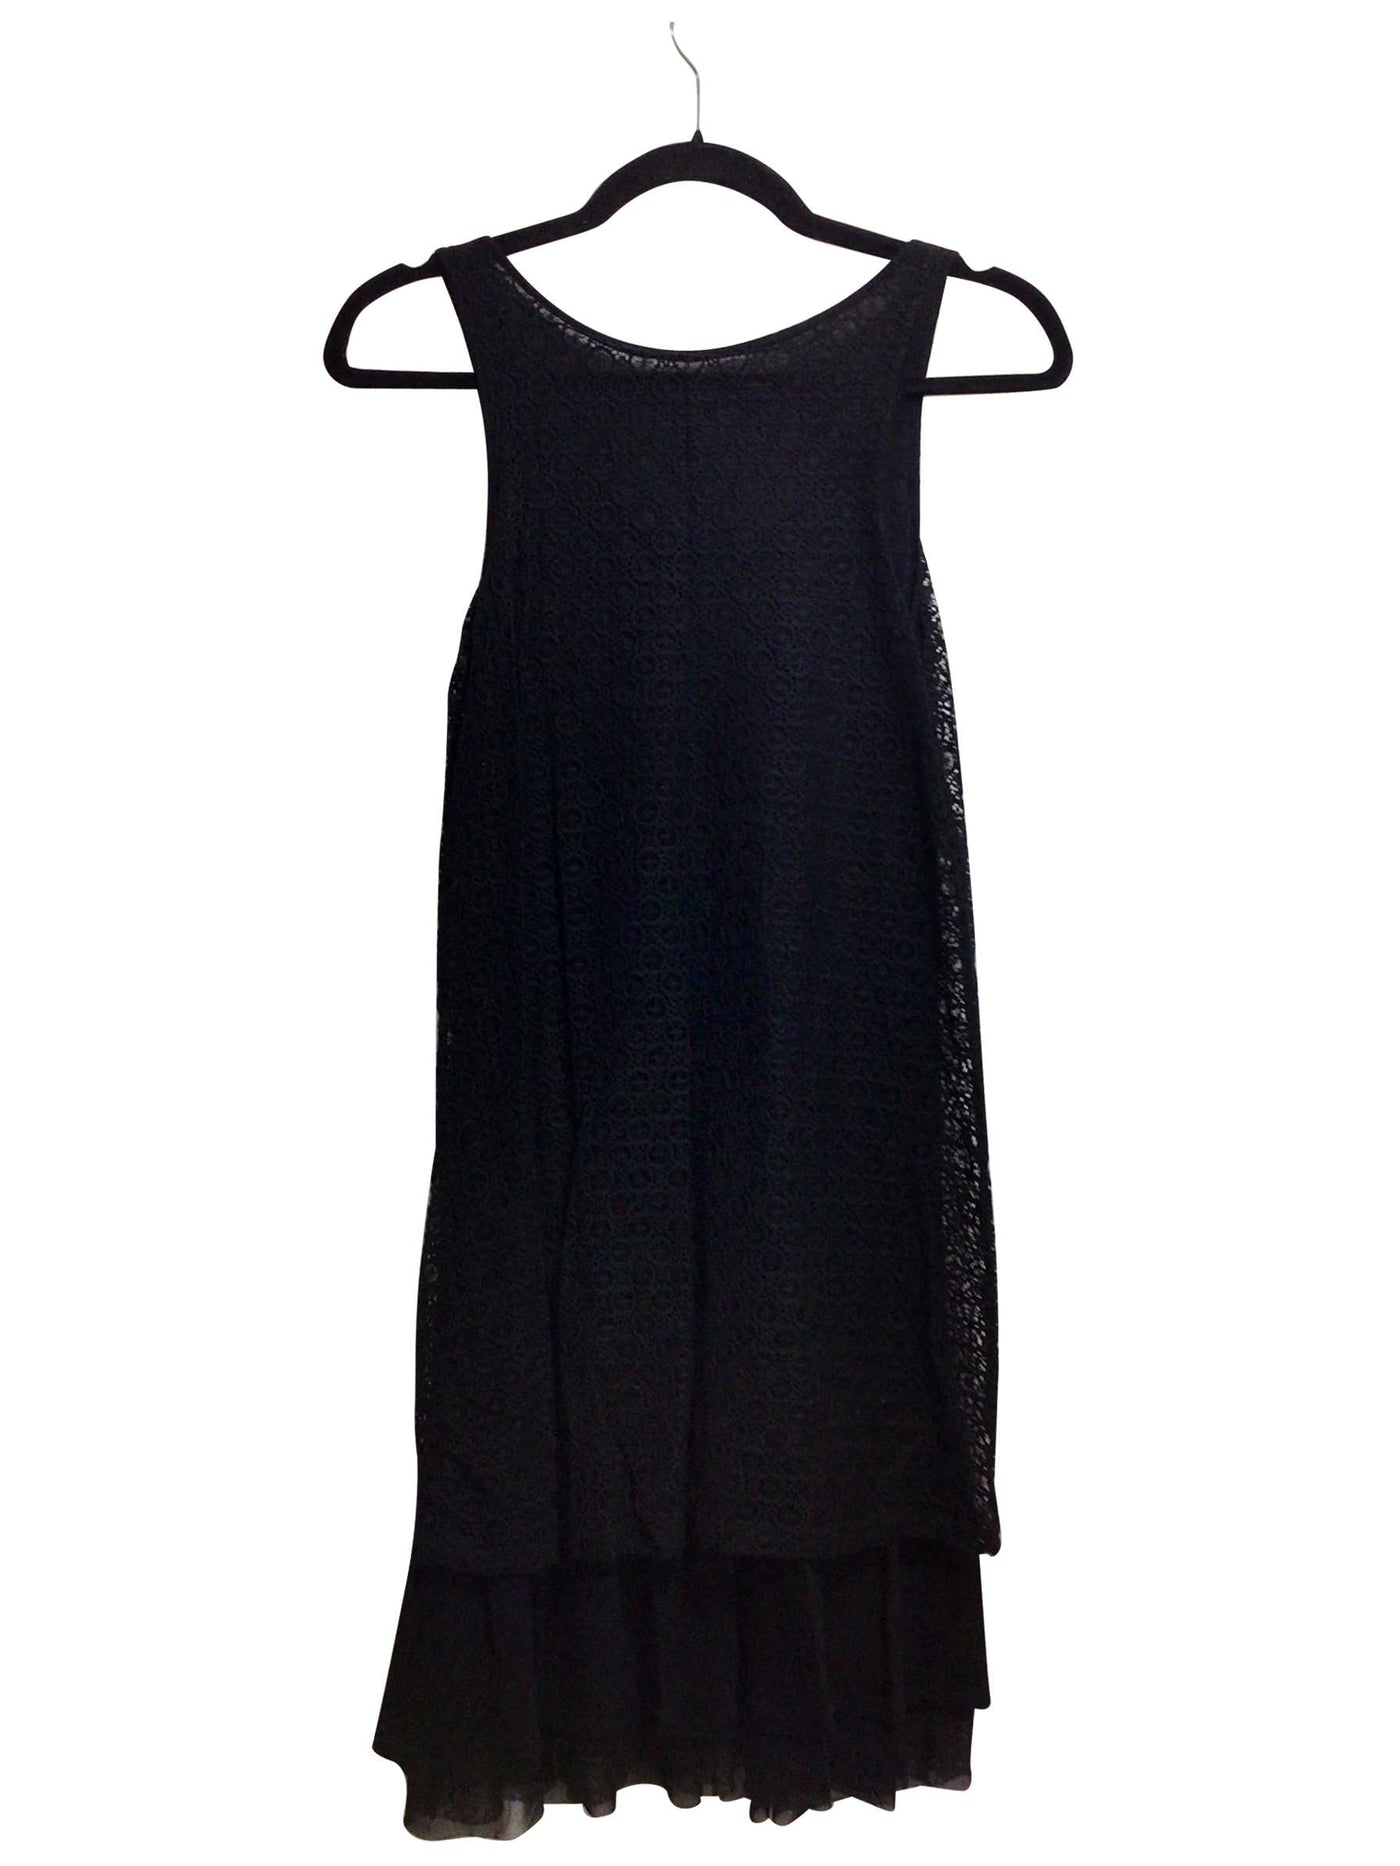 KENSIE Regular fit Shift Dress in Black  -  XS  33.19 Koop